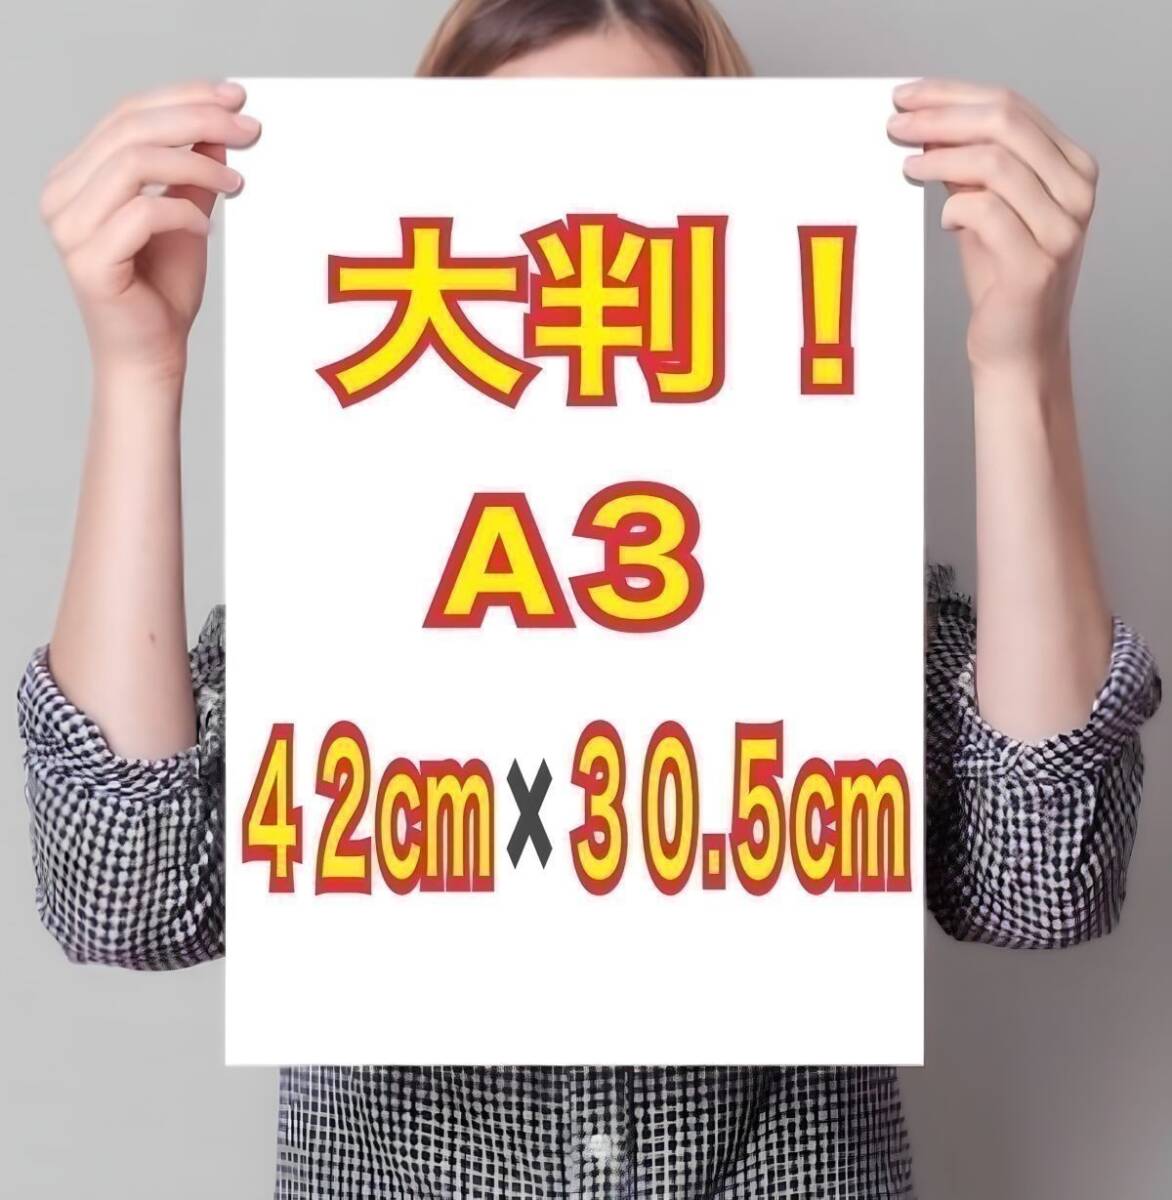  иностранная модель A3 постер супер глянец большой размер 42cm×30.5cm! life photograph *942* Junior идол в натуральную величину способ L